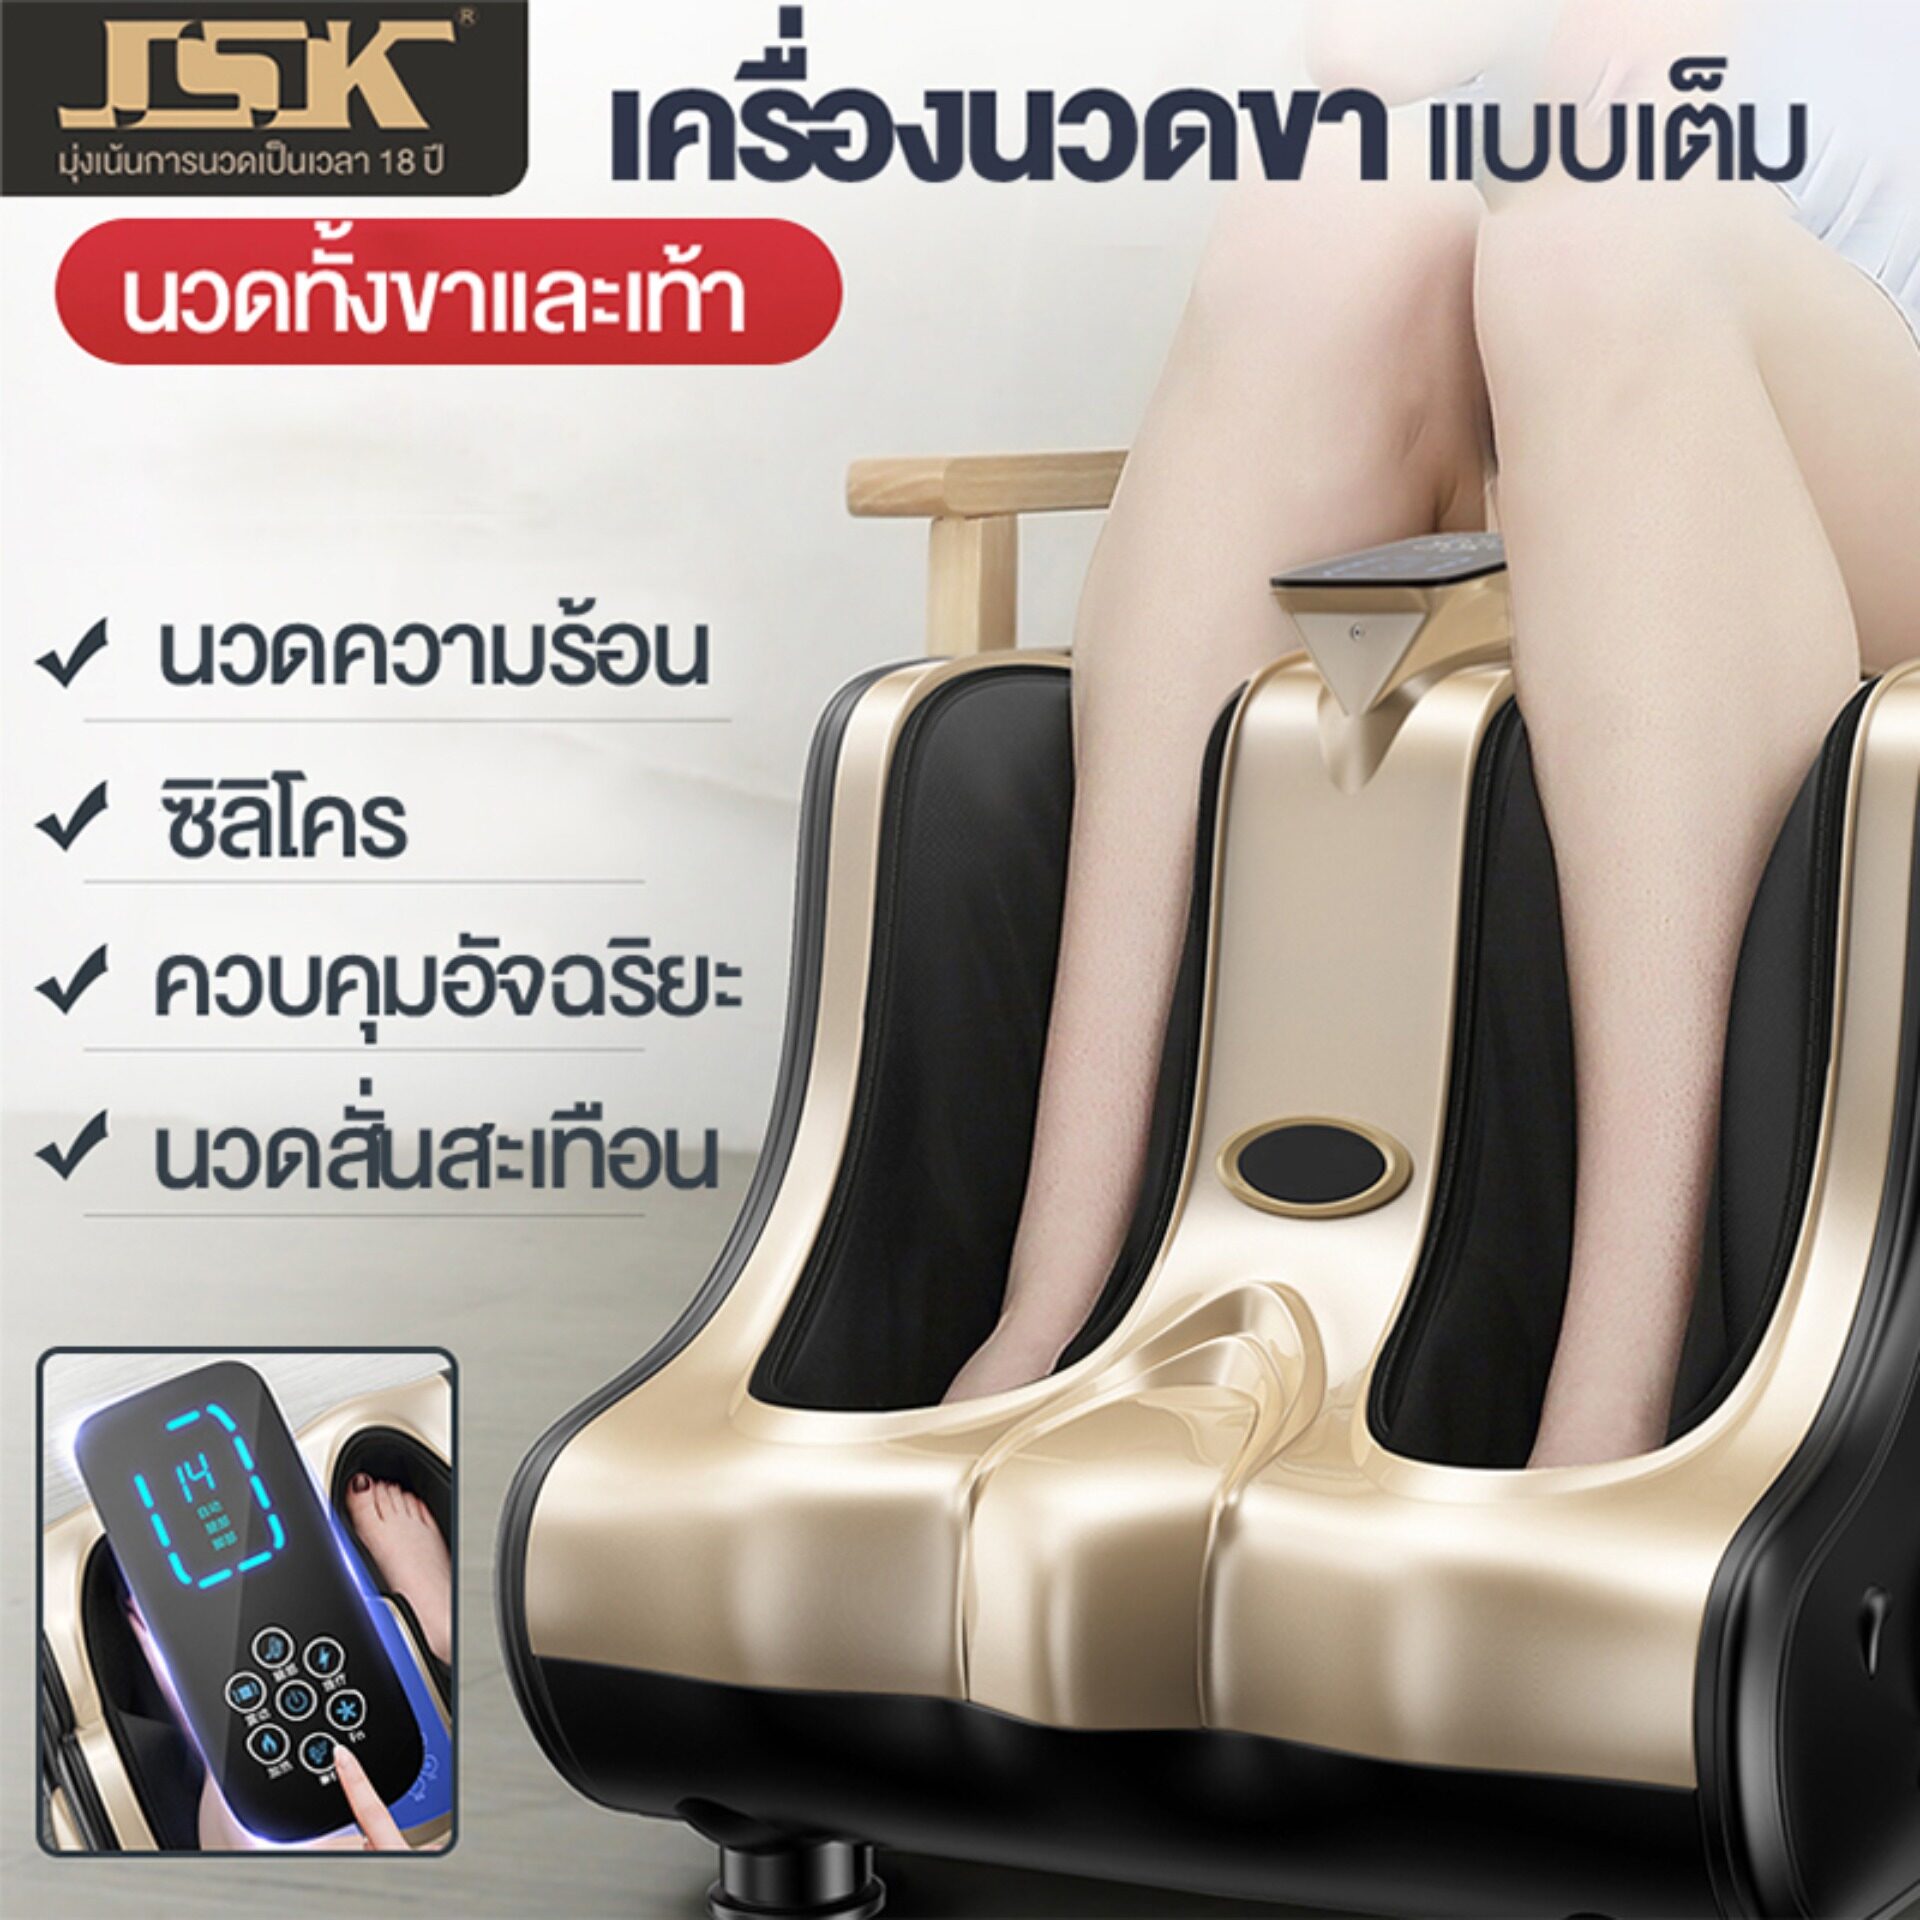 JSK Thailandเครื่องนวดเท้า เครื่องนวดเท้าอัตโนมัติสำหรับขาและน่องนวดเท้าสำหรับบ้าน น่อง และขา เครื่องนวดฝ่าเท้า เครื่องนวดขา (EMS กายภาพบำบัด + สี่มอเตอร์) การกำหนดค่าเต็มรูปแบบ / 60 โหมดนวดขนาดใหญ่ / การสั่นสะเทือนความถี่สูง / ขูดถูแบบกัวซา/ หน้าจอ HD